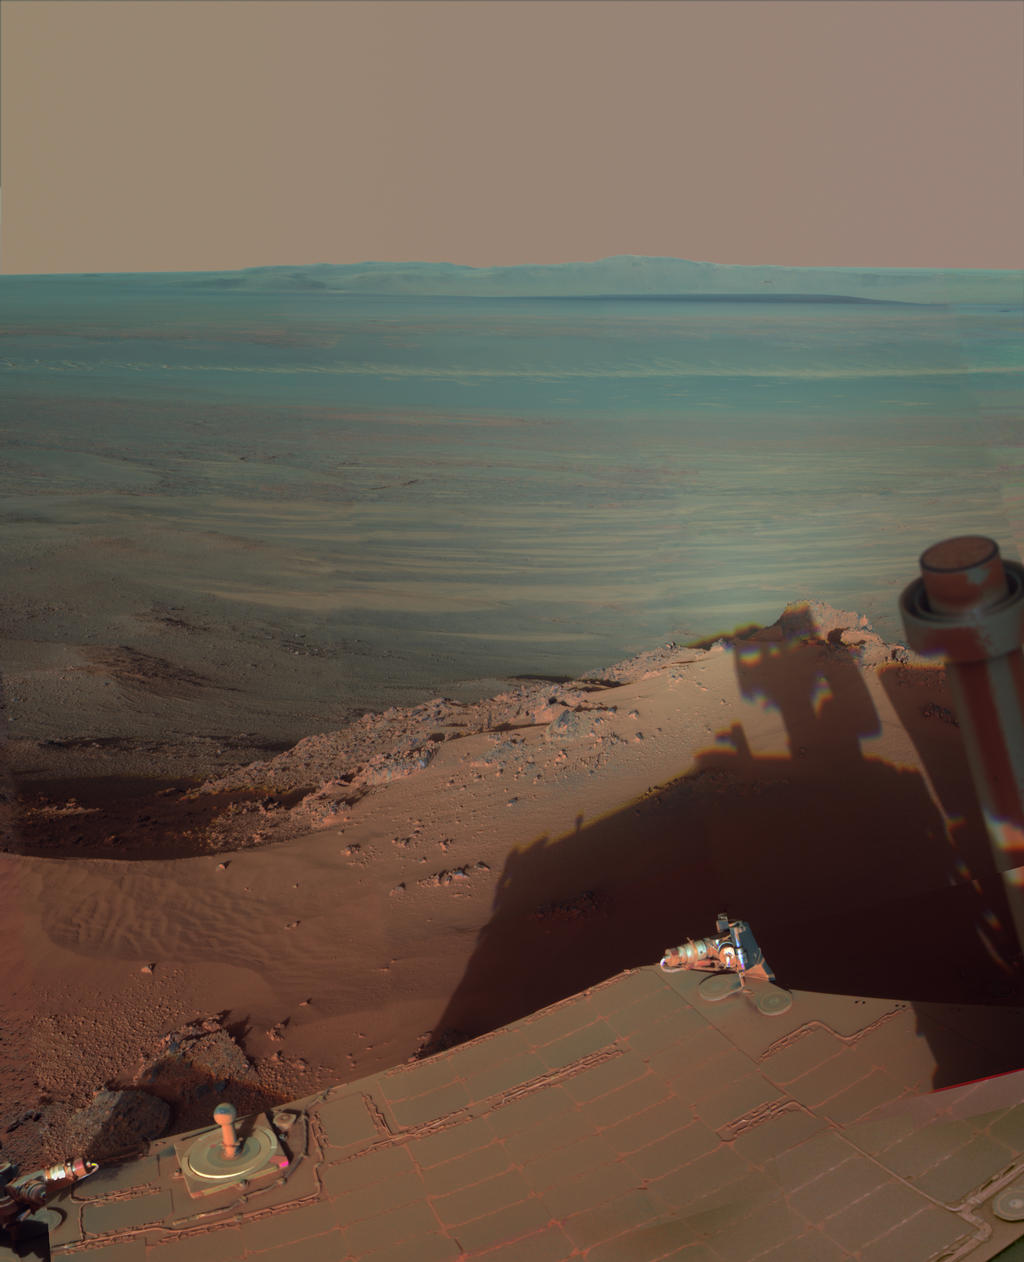 da NASA Mars Rover Opportunity pega sua própria sombra de fim de tarde nesta vista dramaticamente iluminado leste através Endeavour cratera em Marte.